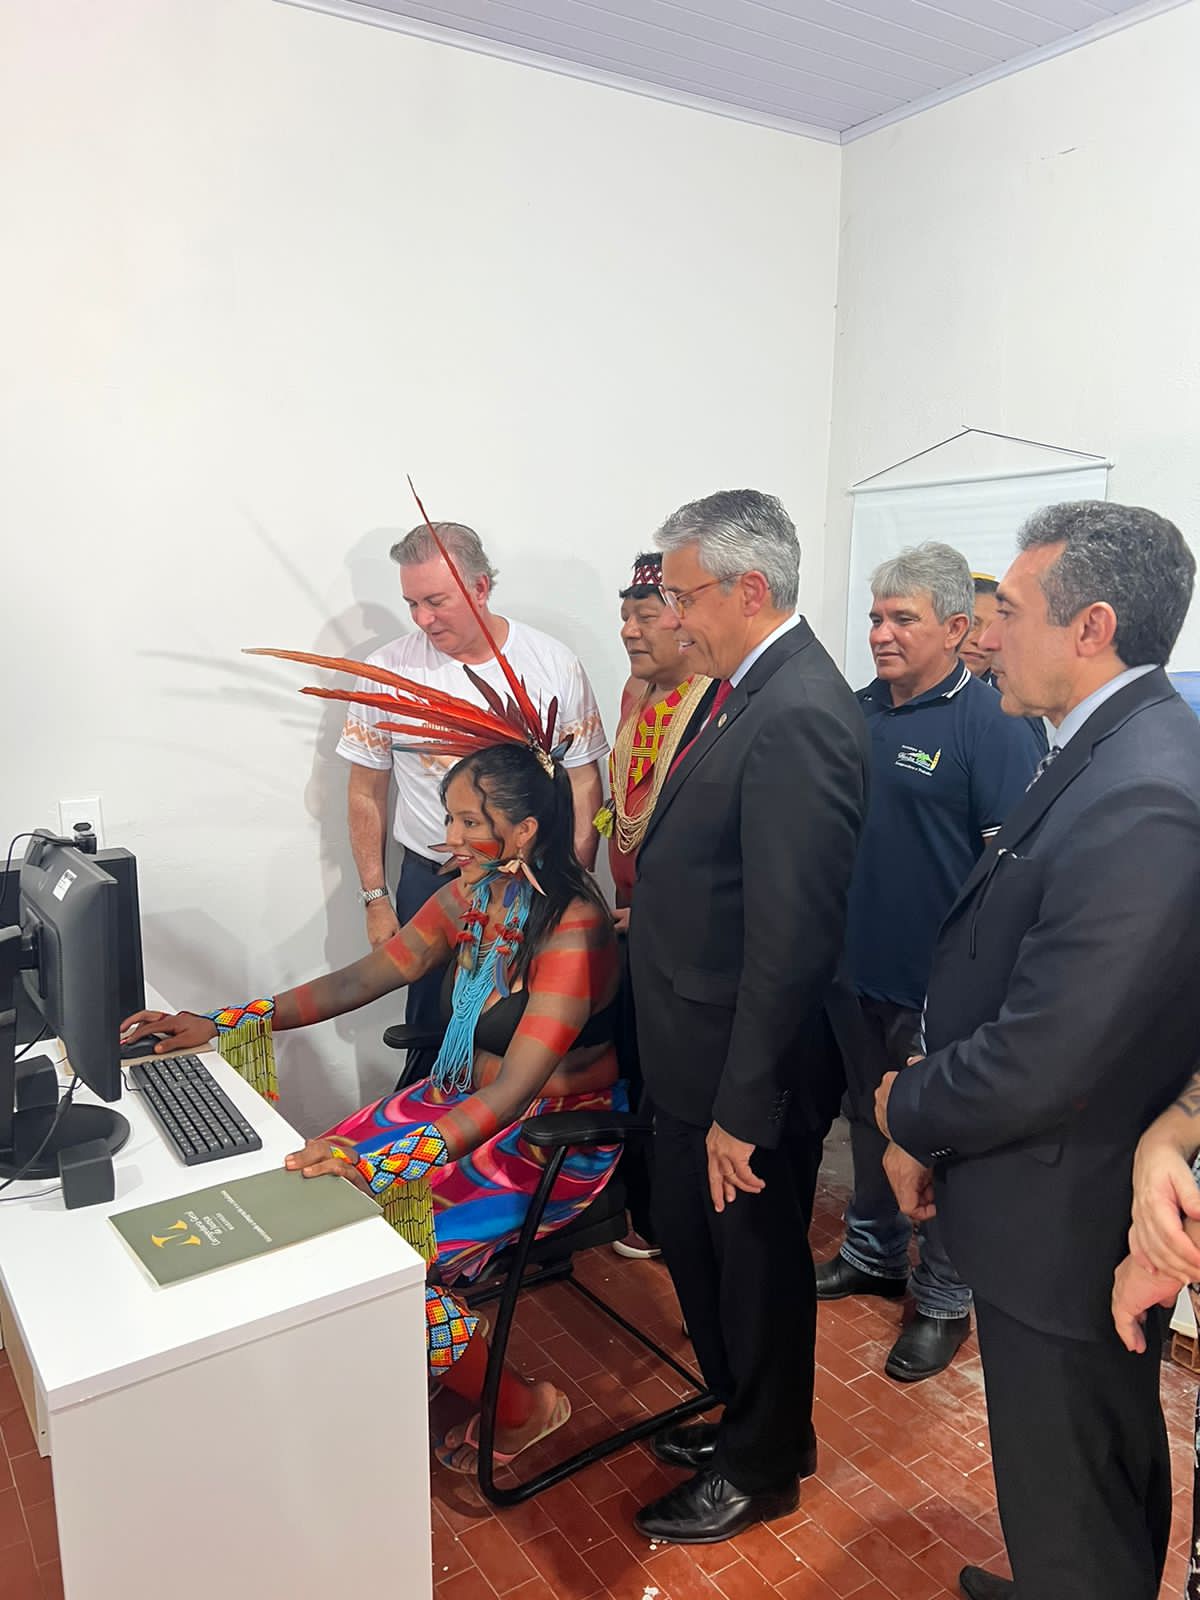 grupo de pessoas, entre elas o corregedor-geral da justiça, o presidente do TJ e uma mulher indígena, em frente ao computador